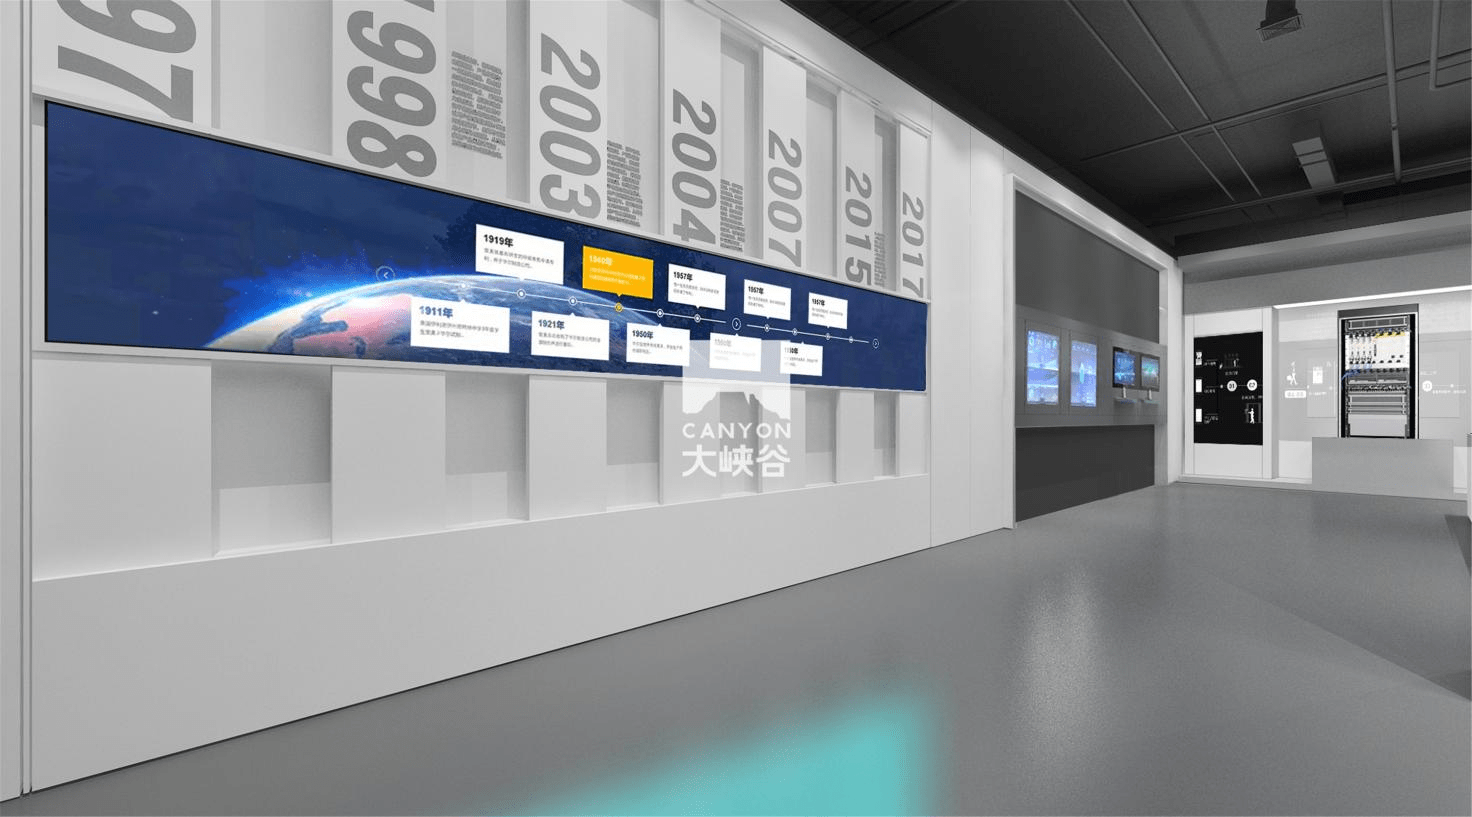 企业文化展馆展陈设计:从内容到空间的布置